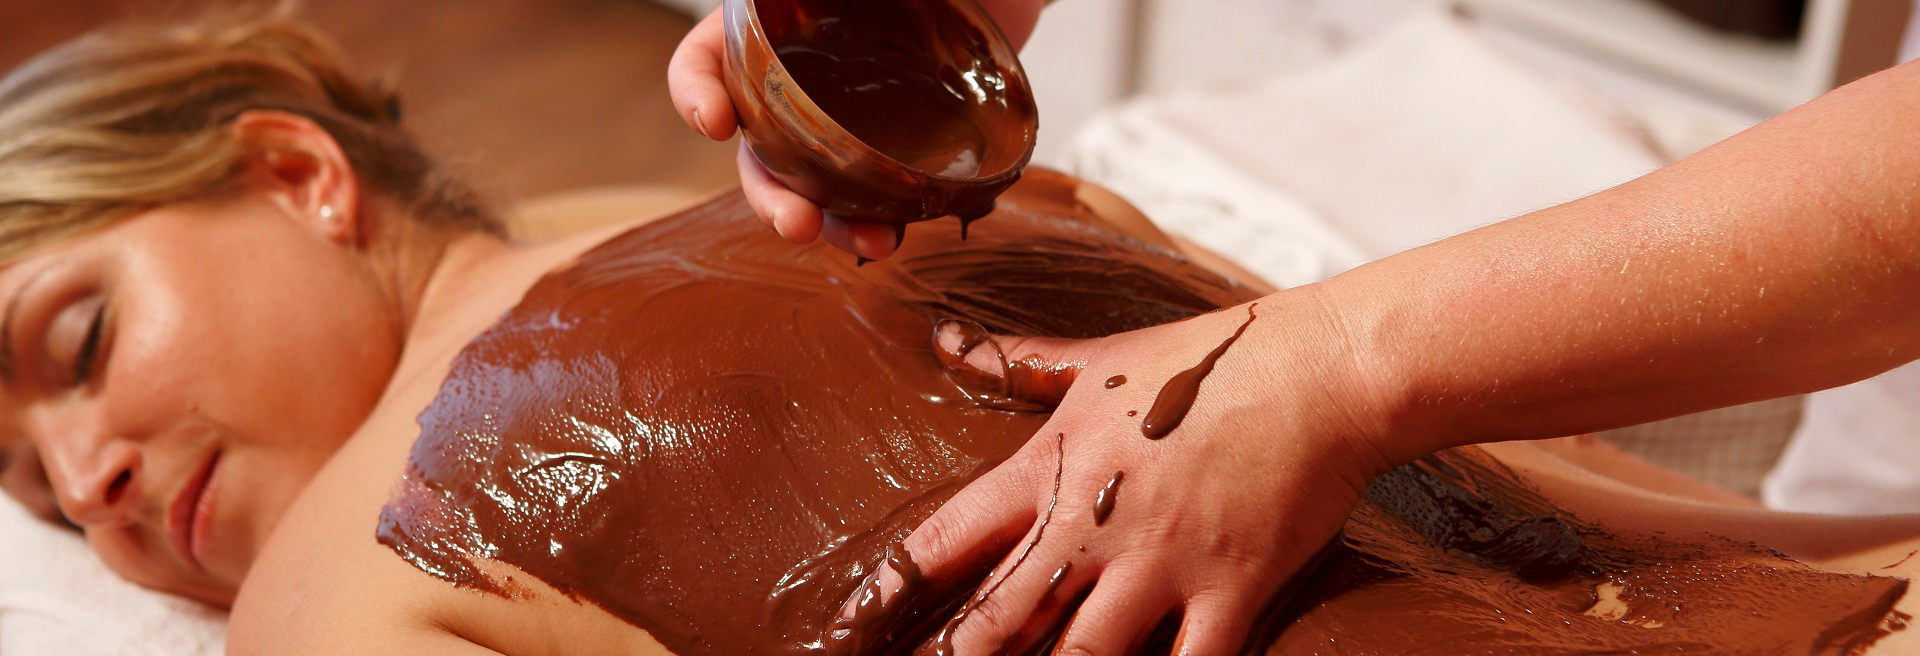 Dárkové poukazy - čokoládová masáž